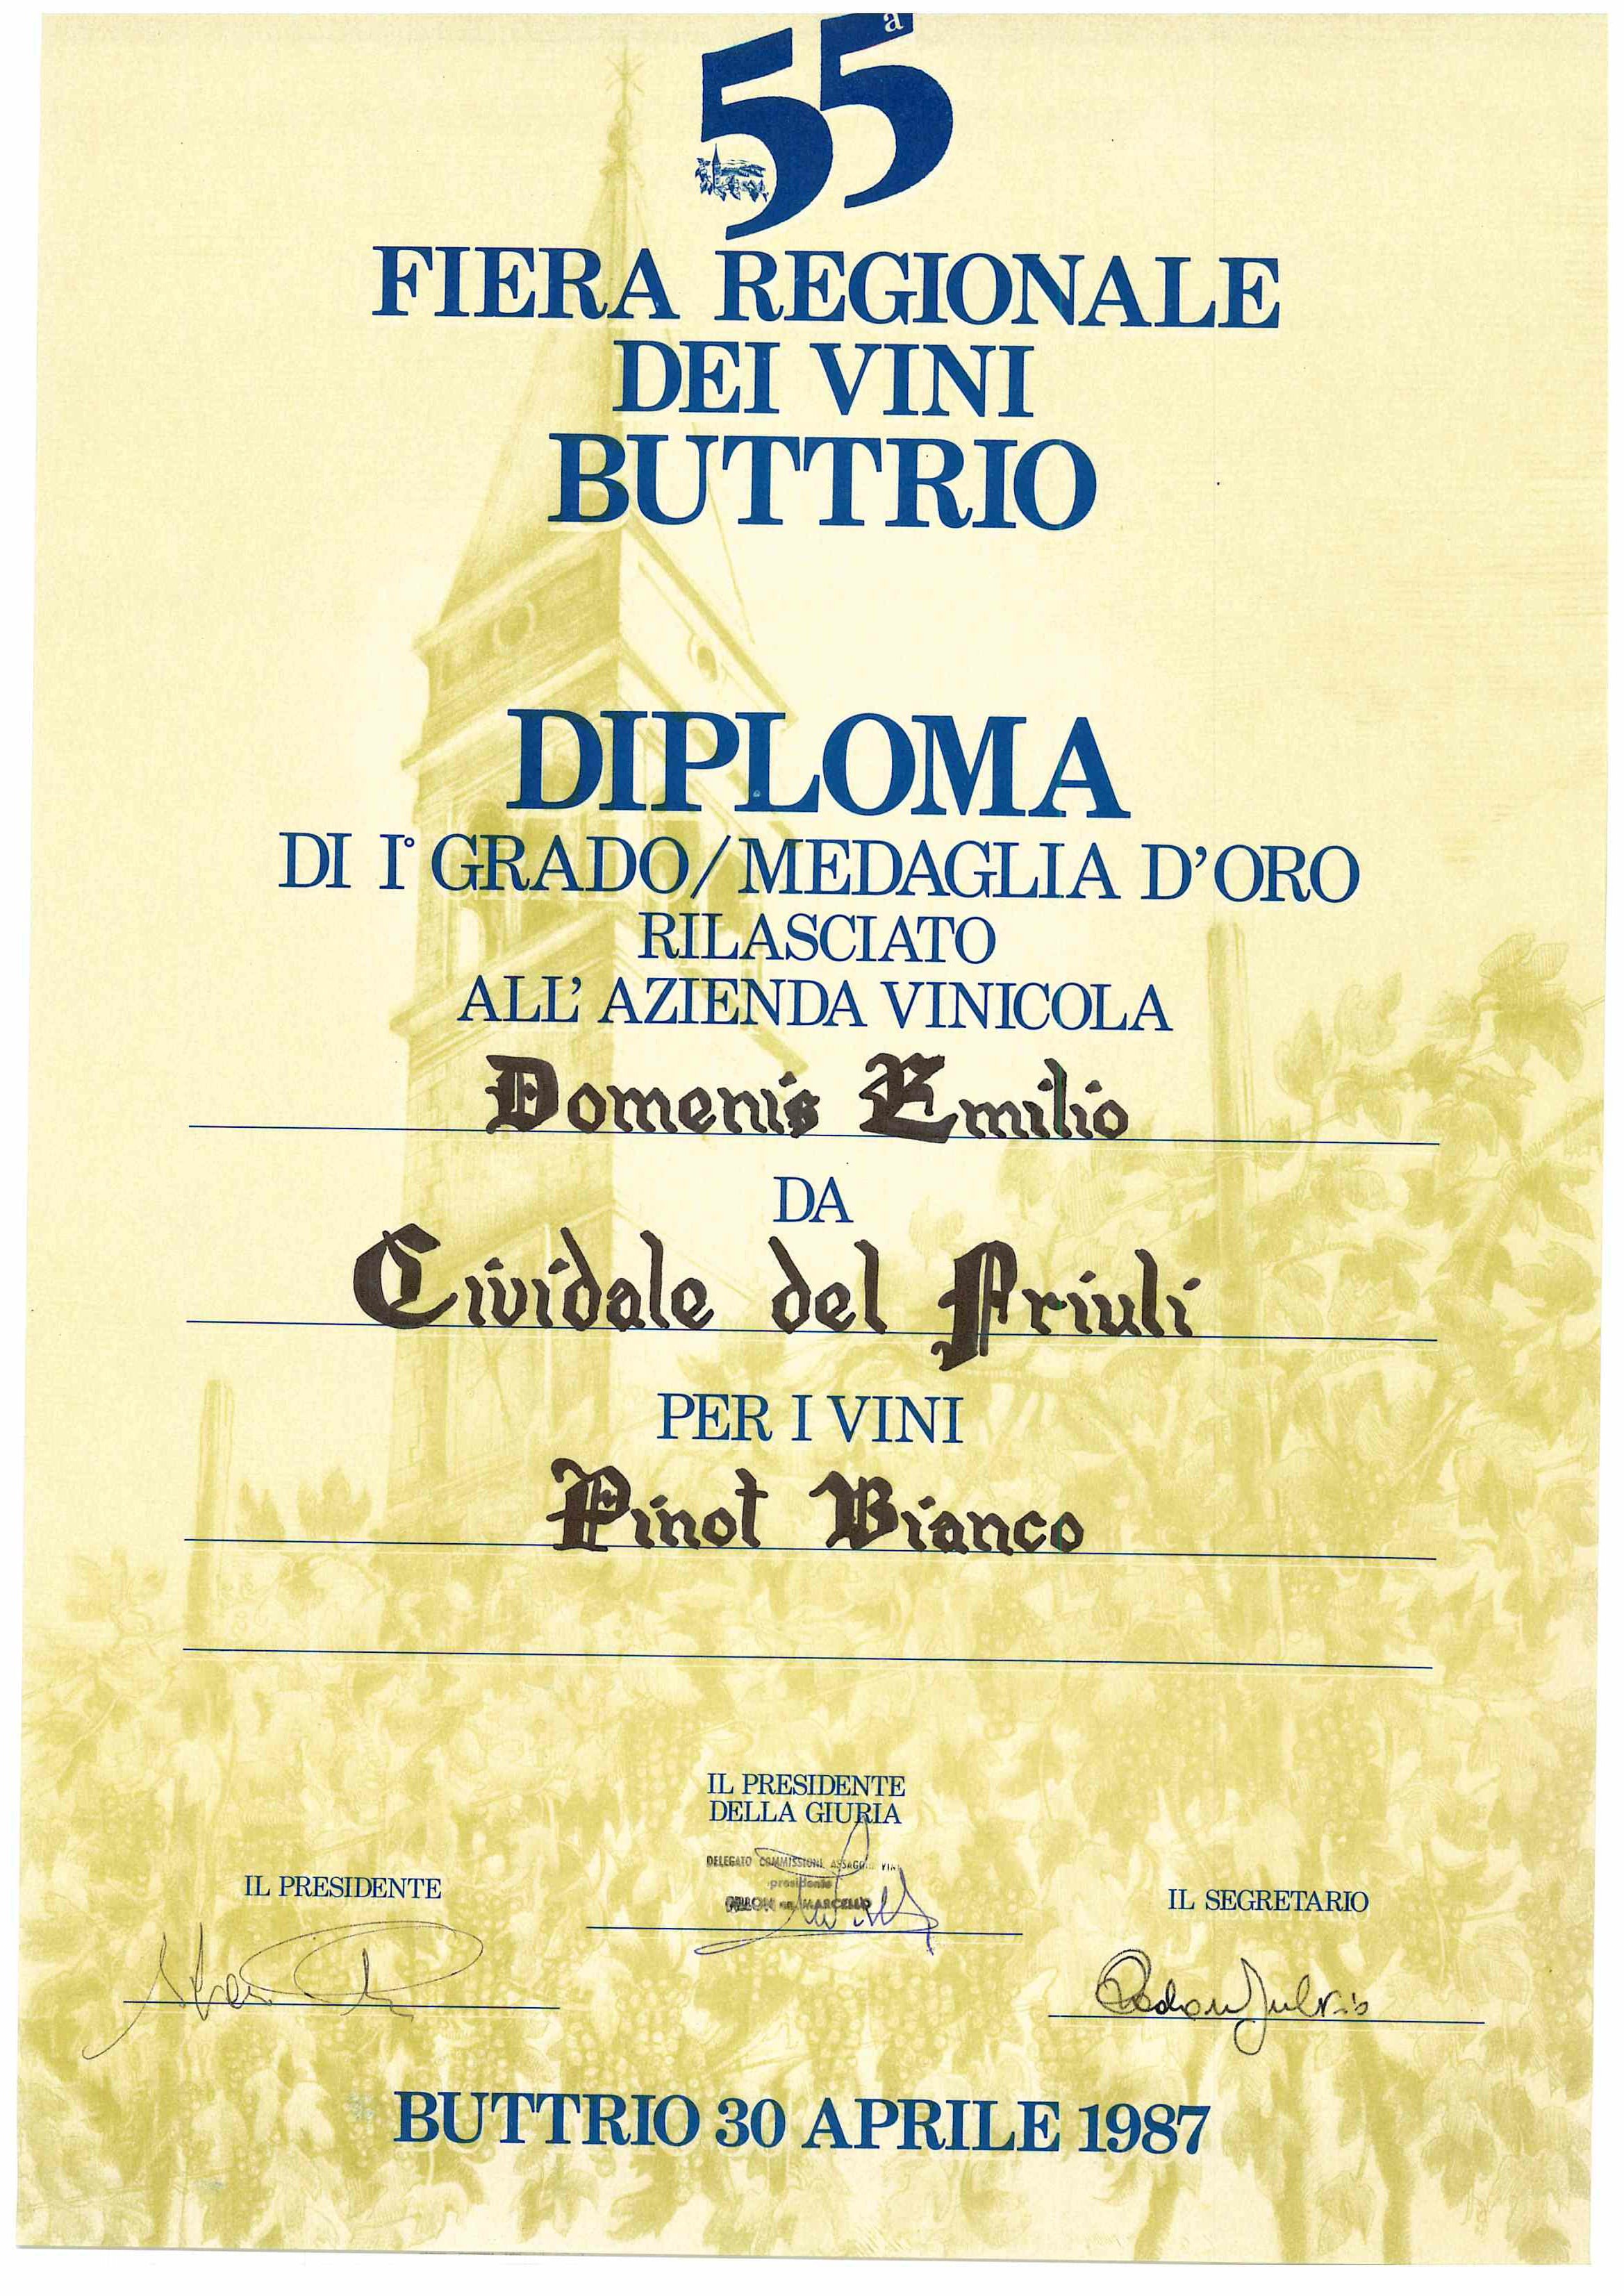 Mostra regionale dei vini buttrio 1987 – Pinot Bianco